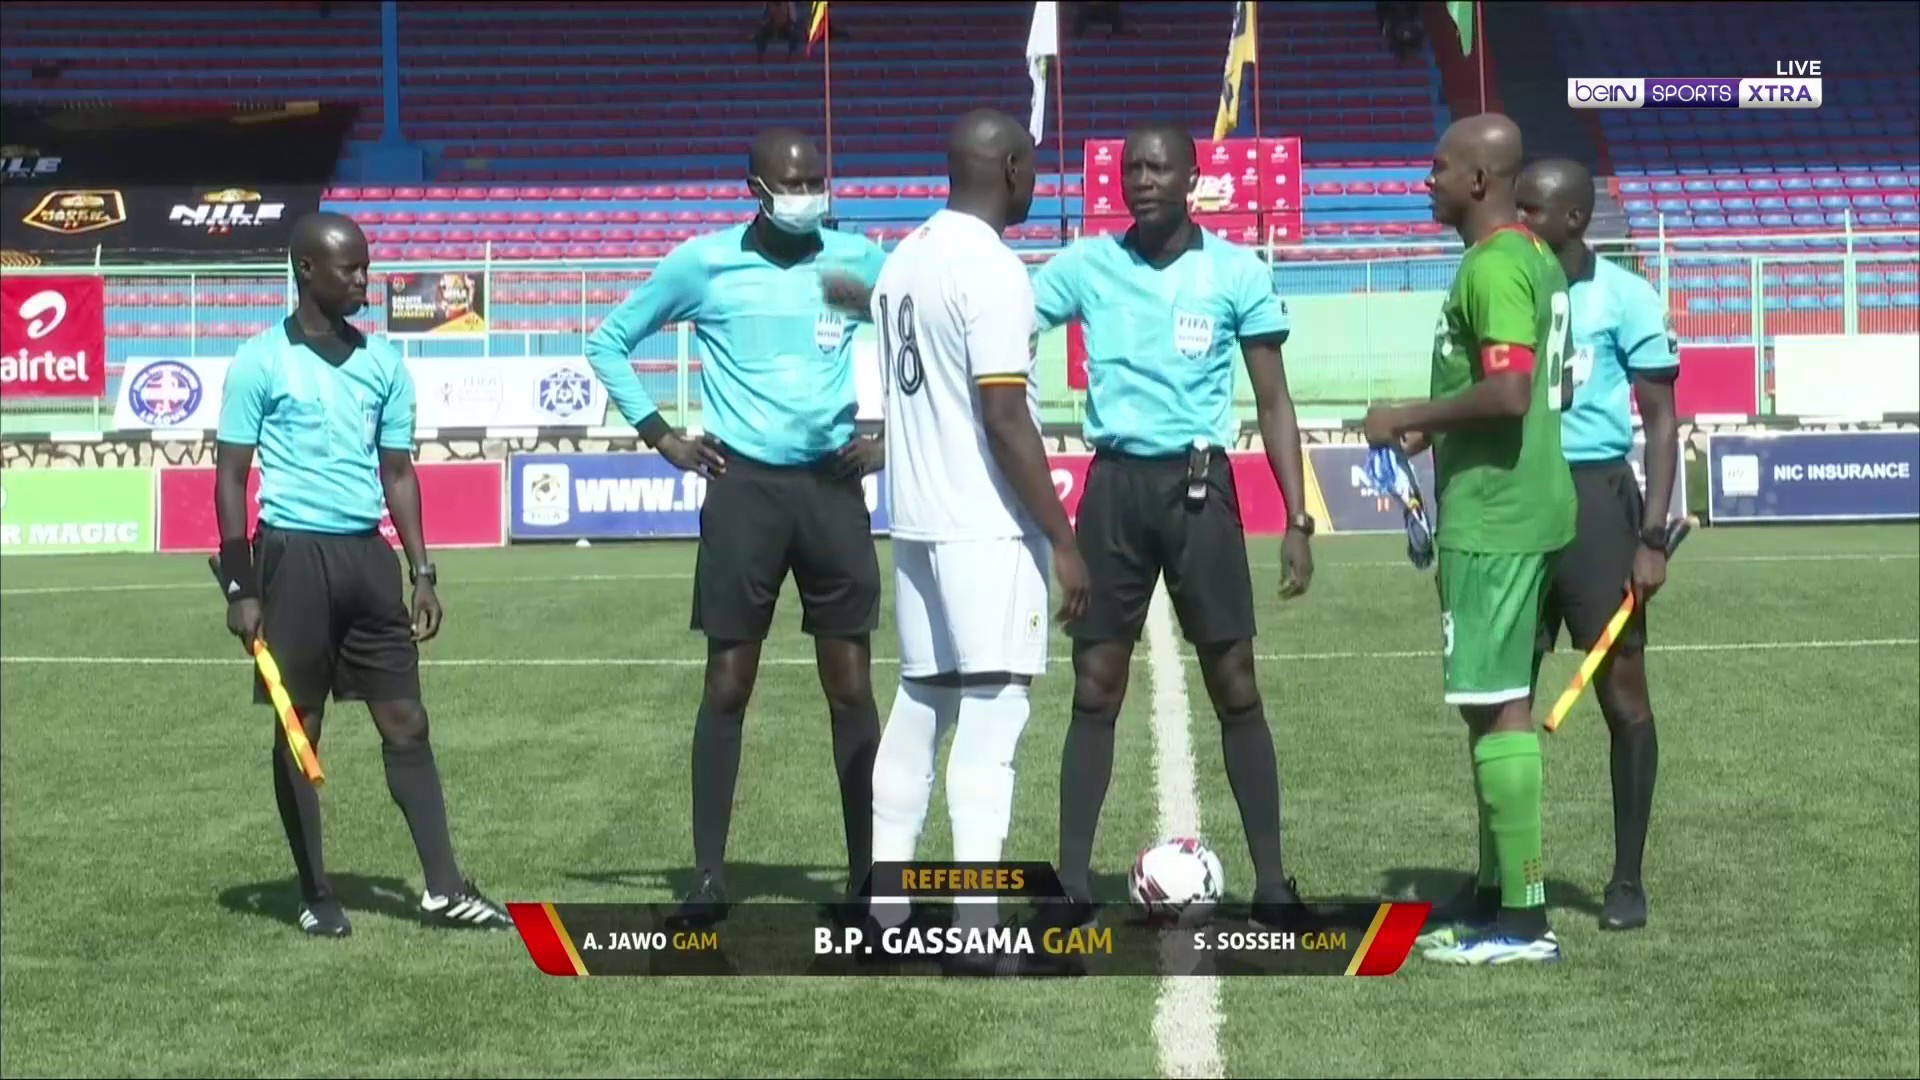 Highlights: Uganda 0-0 Burkina Faso (FT)